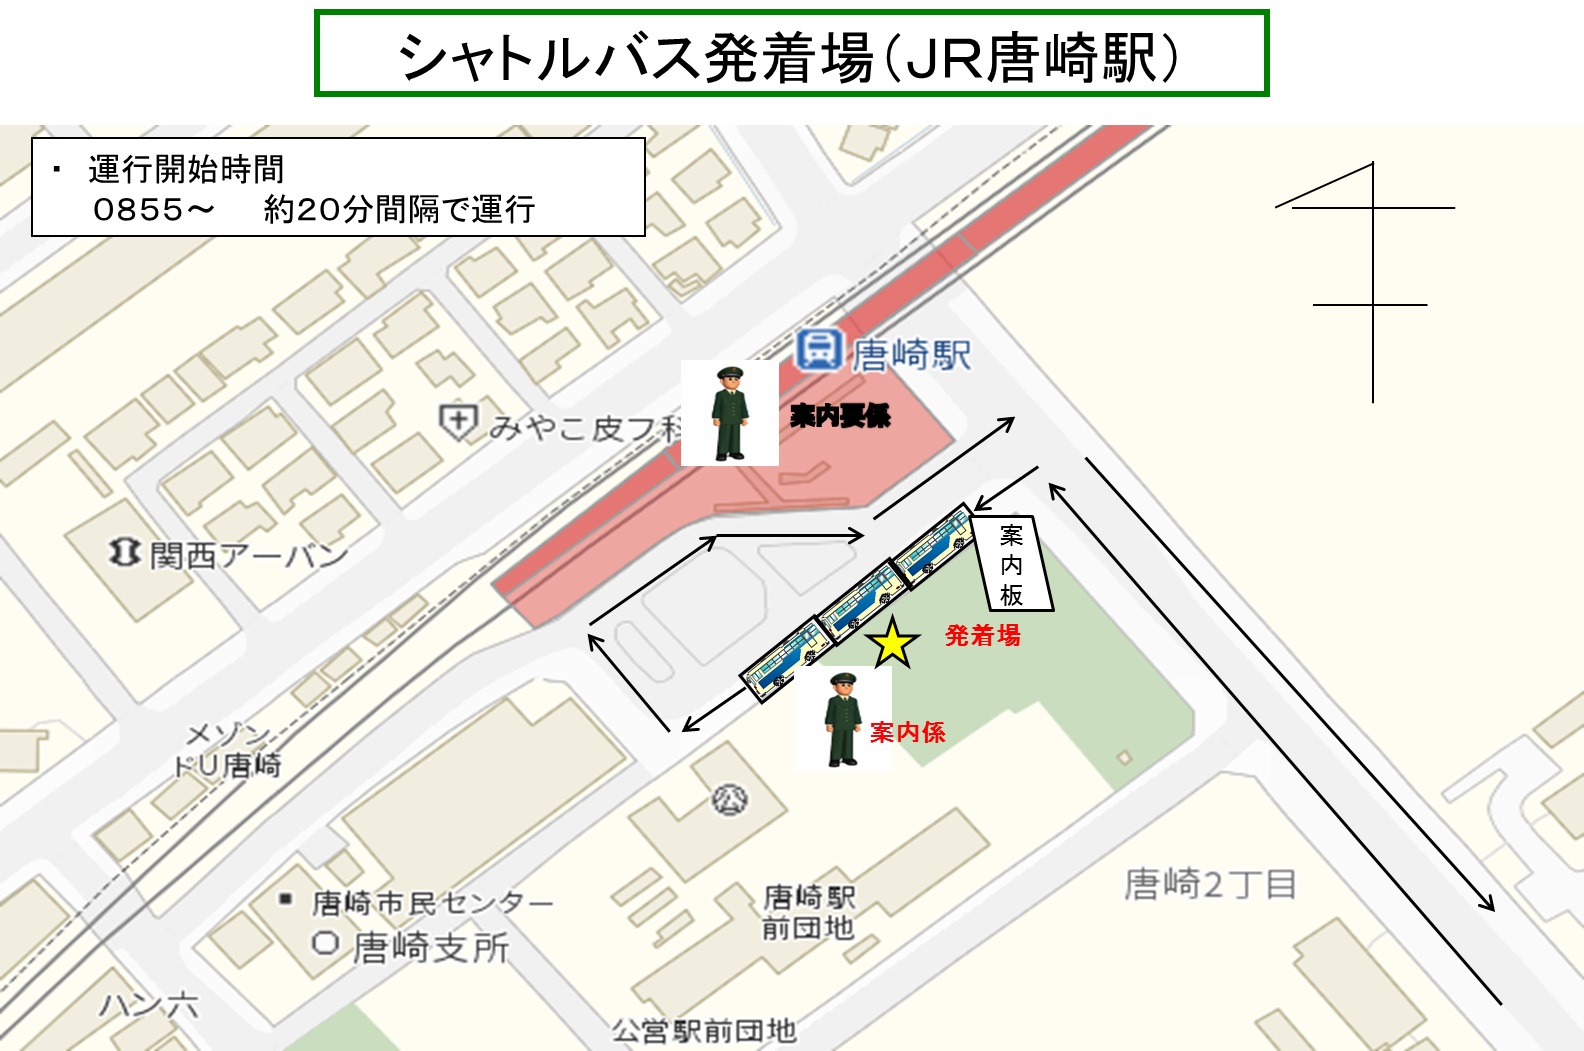 記念行事「JR唐崎駅」シャトルバス発着所案内図